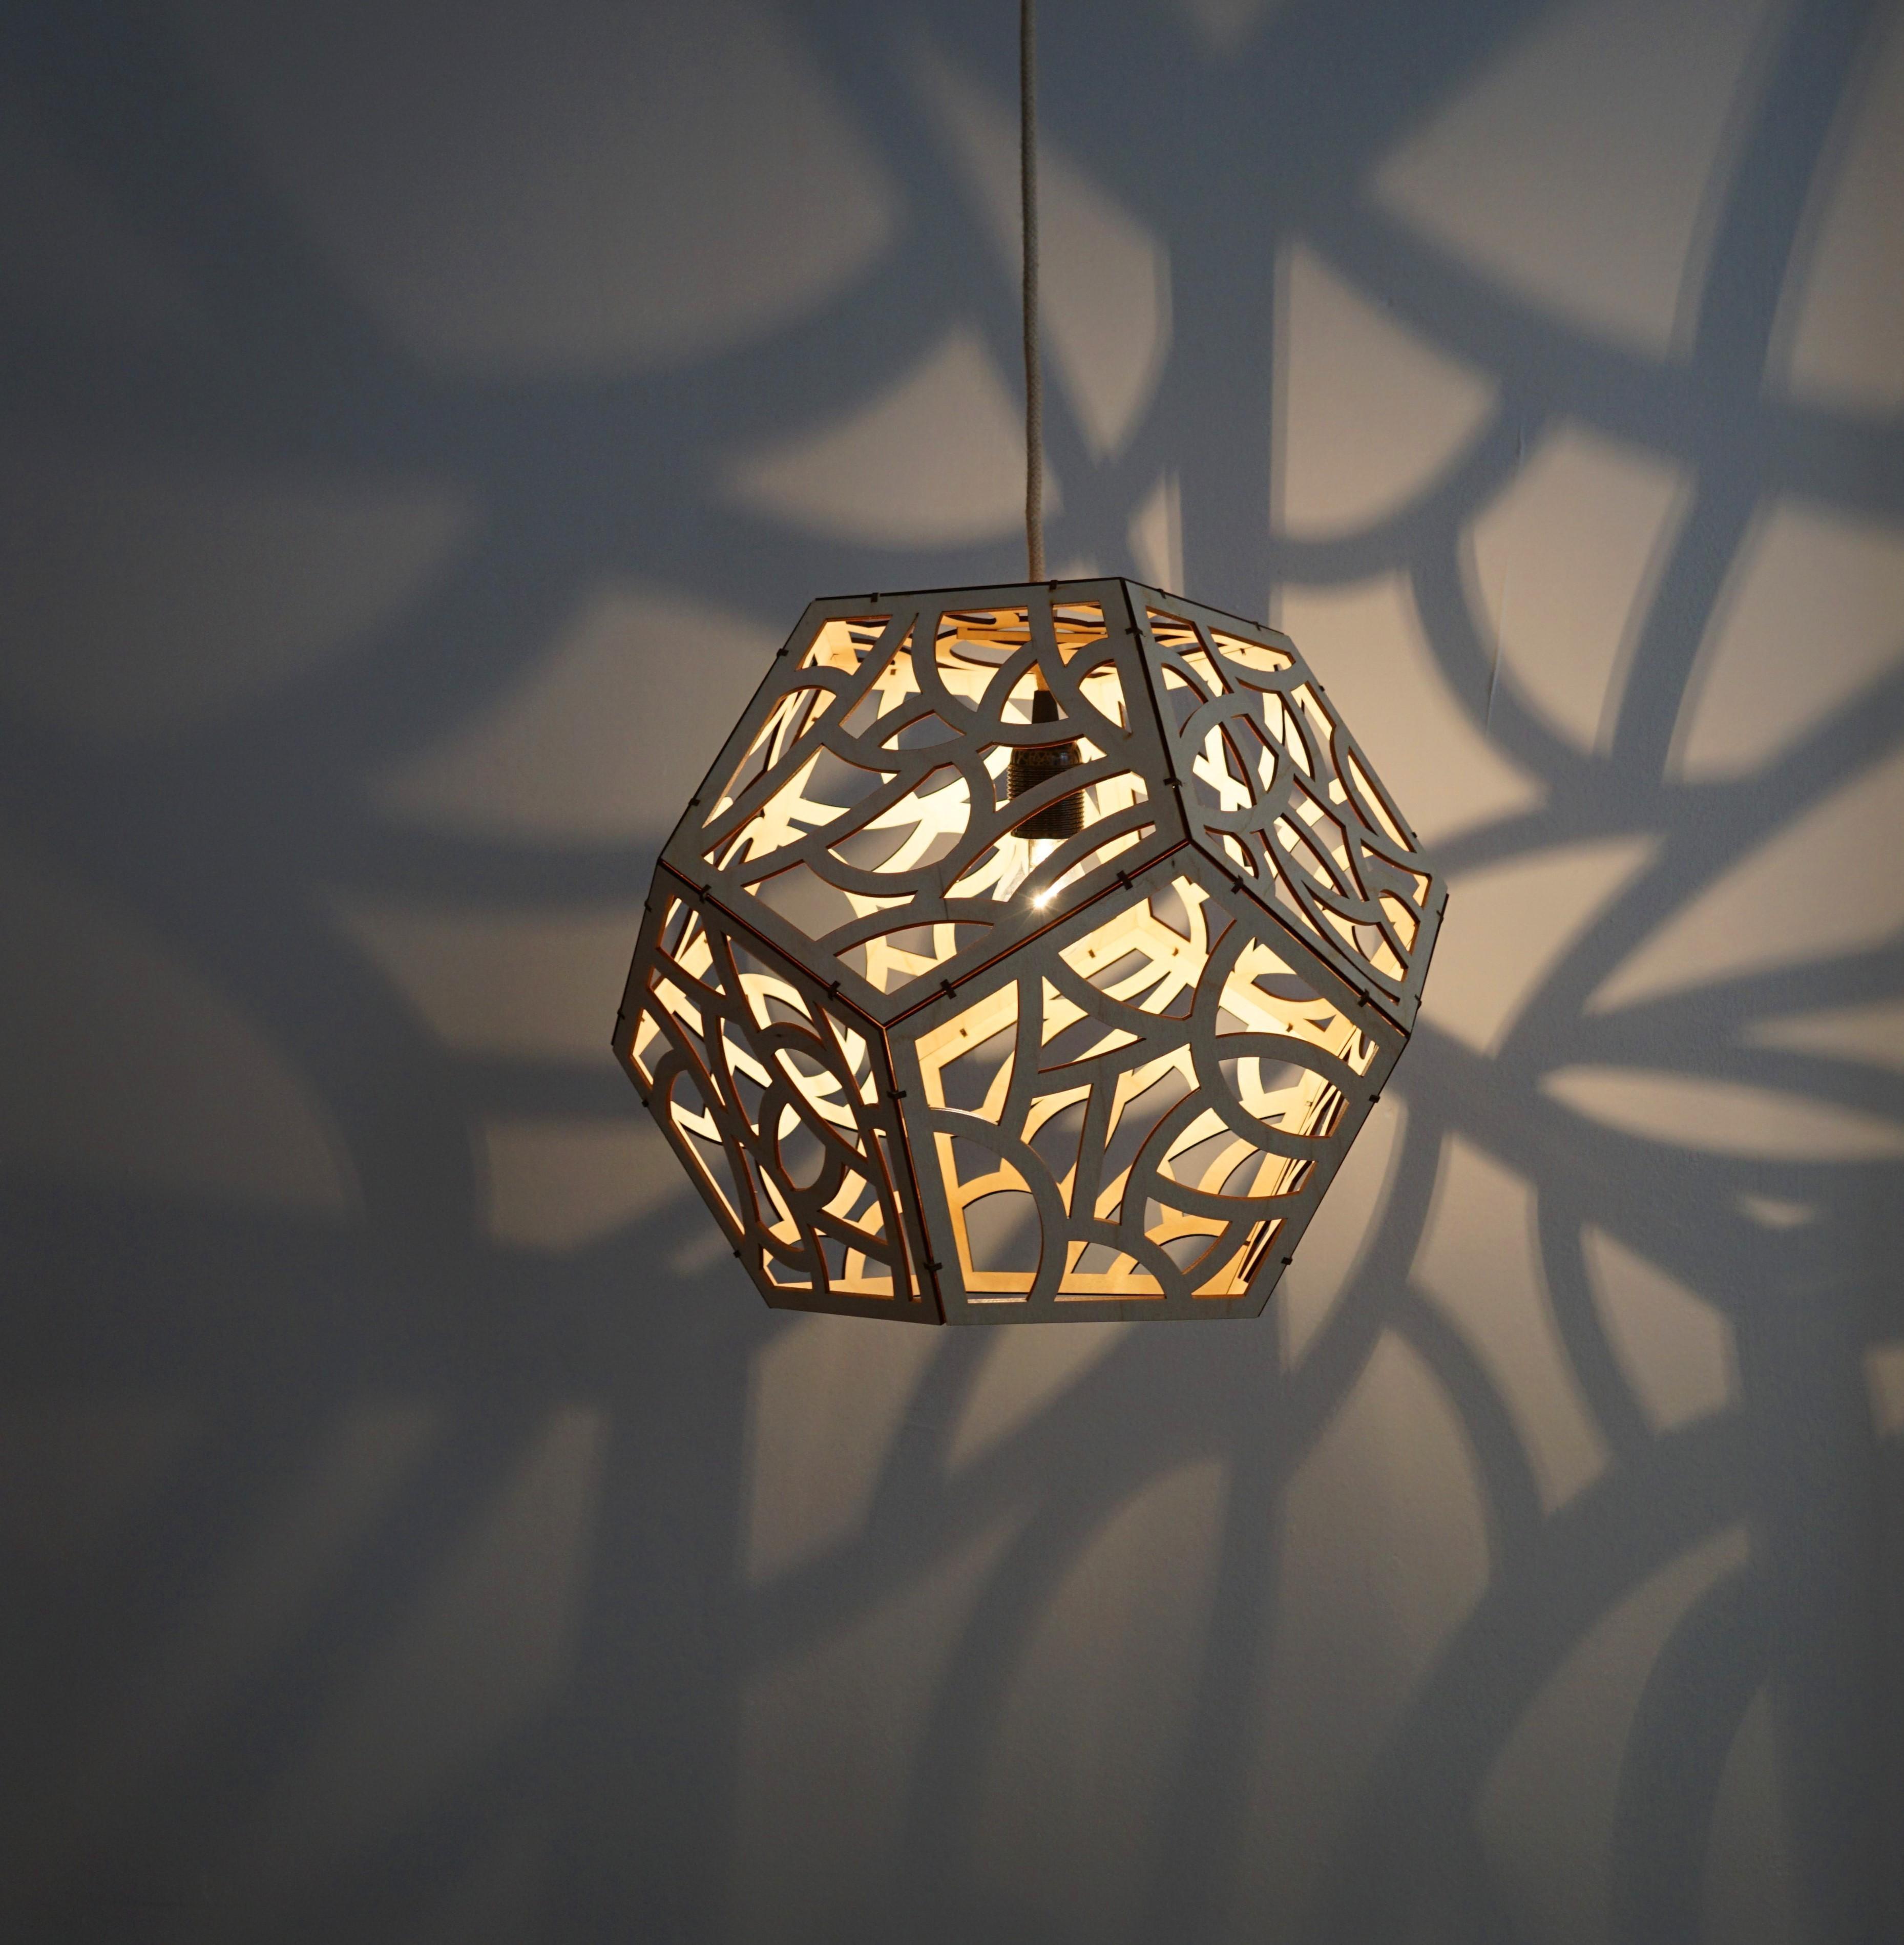 Neuer Lampenschirm, von mir entworfen und gebaut :)
Schaut auf meiner website vorbei für mehr!
#lampen #licht #schatten 